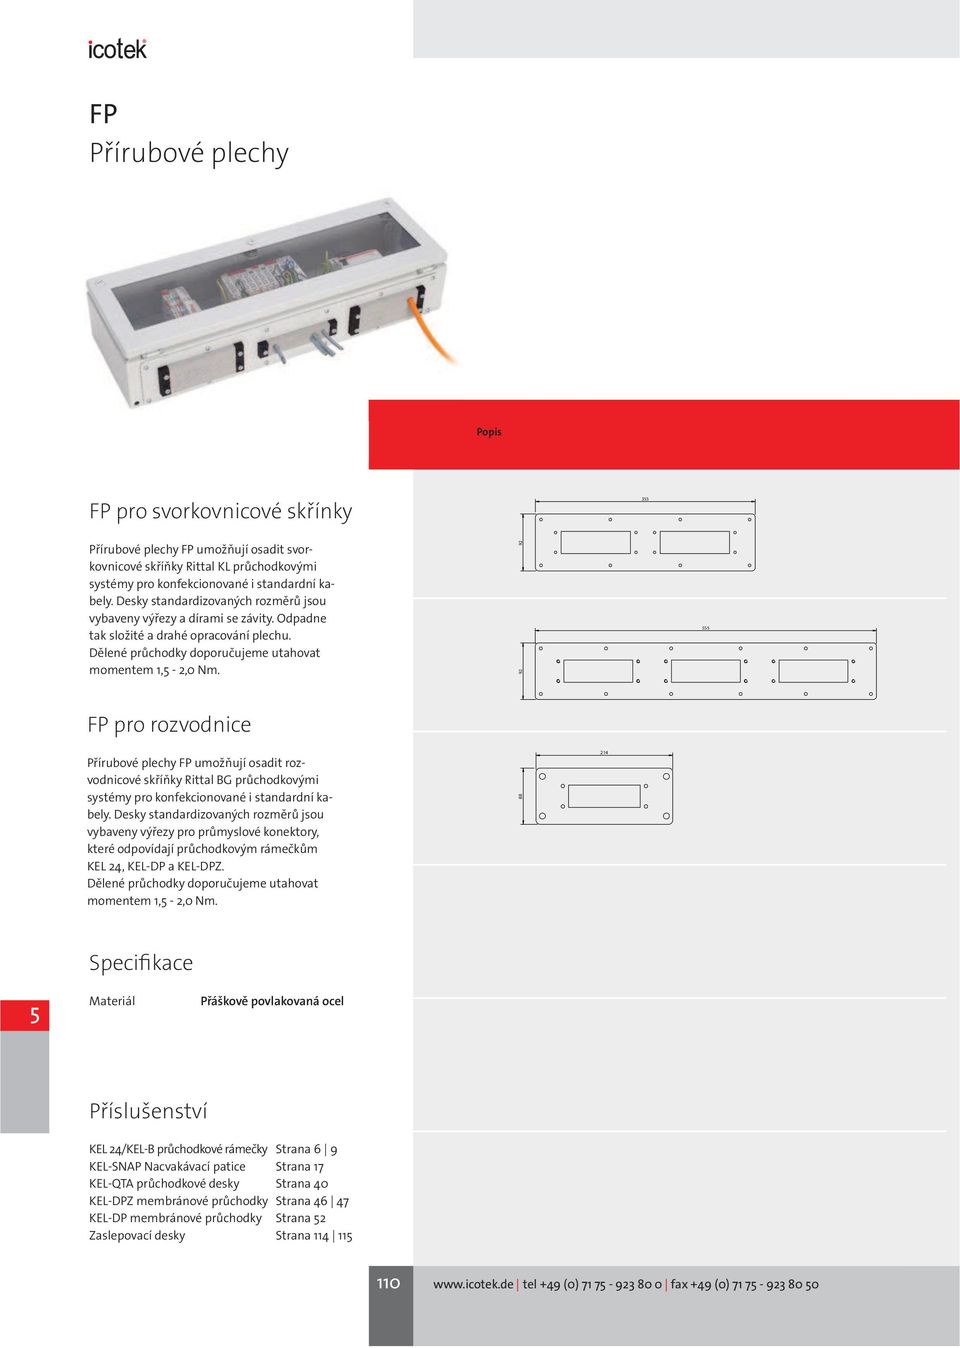 92 92 555 FP pro rozvodnice Přírubové plechy FP umožňují osadit rozvodnicové skříňky Rittal BG průchodkovými systémy pro konfekcionované i standardní kabely.